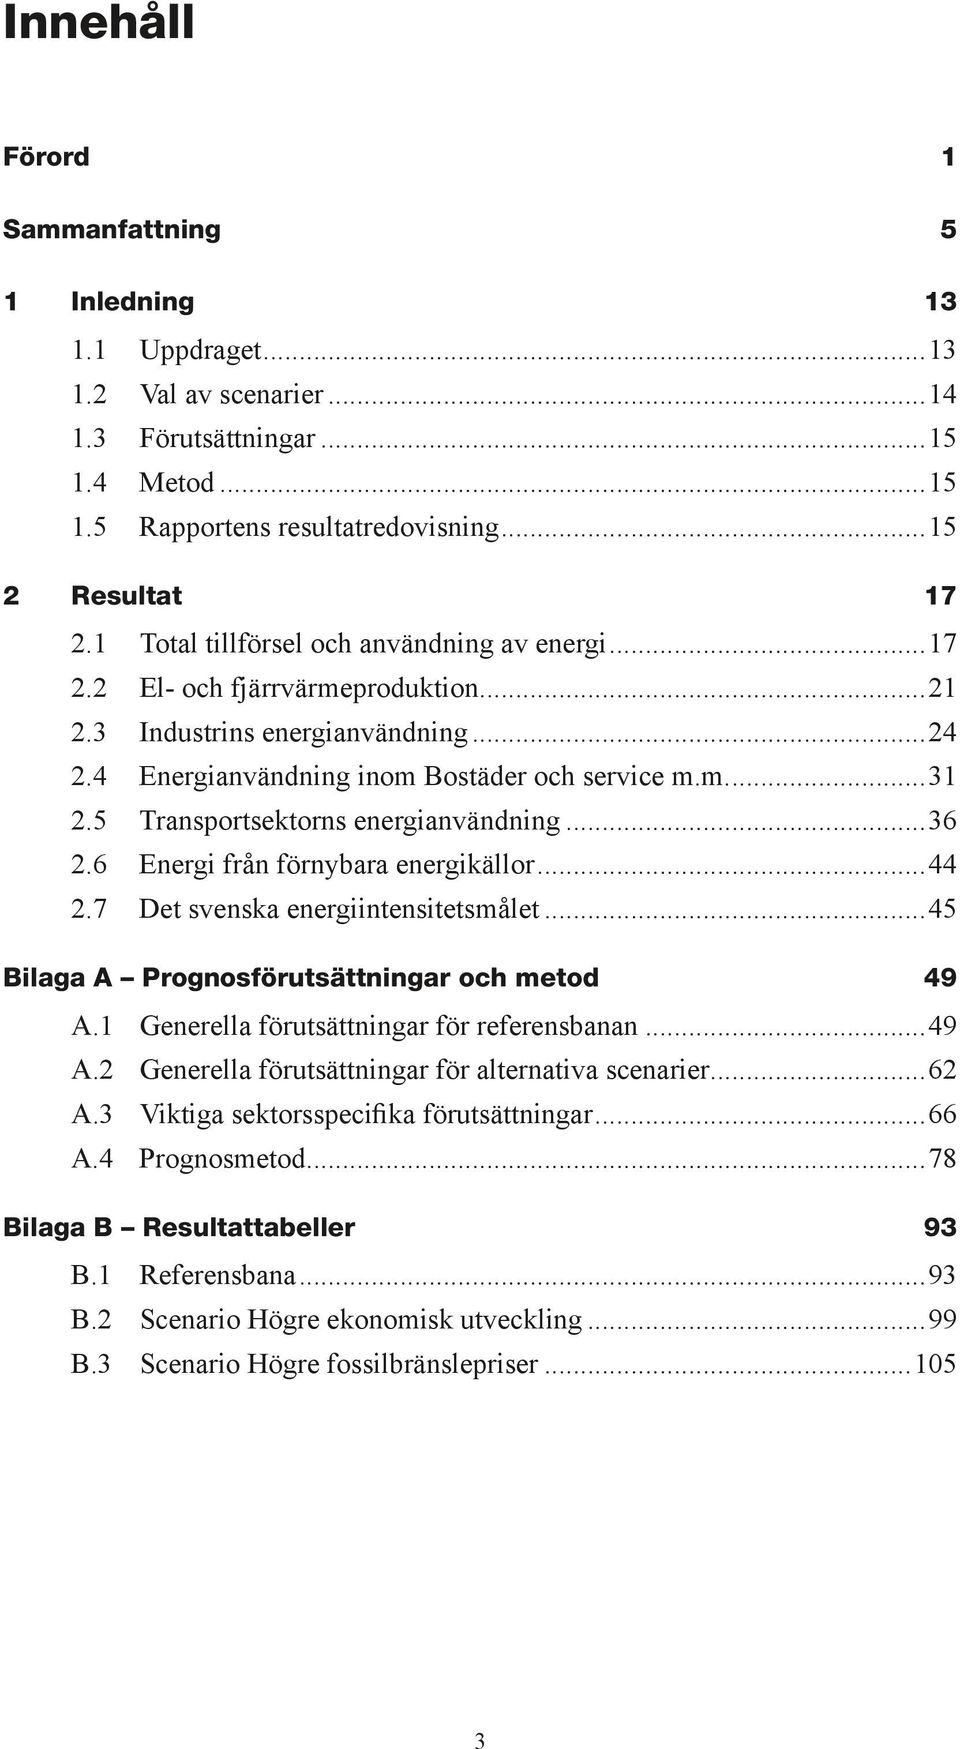 5 Transportsektorns energianvändning...36 2.6 Energi från förnybara energikällor...44 2.7 Det svenska energiintensitetsmålet...45 Bilaga A Prognosförutsättningar och metod 49 A.